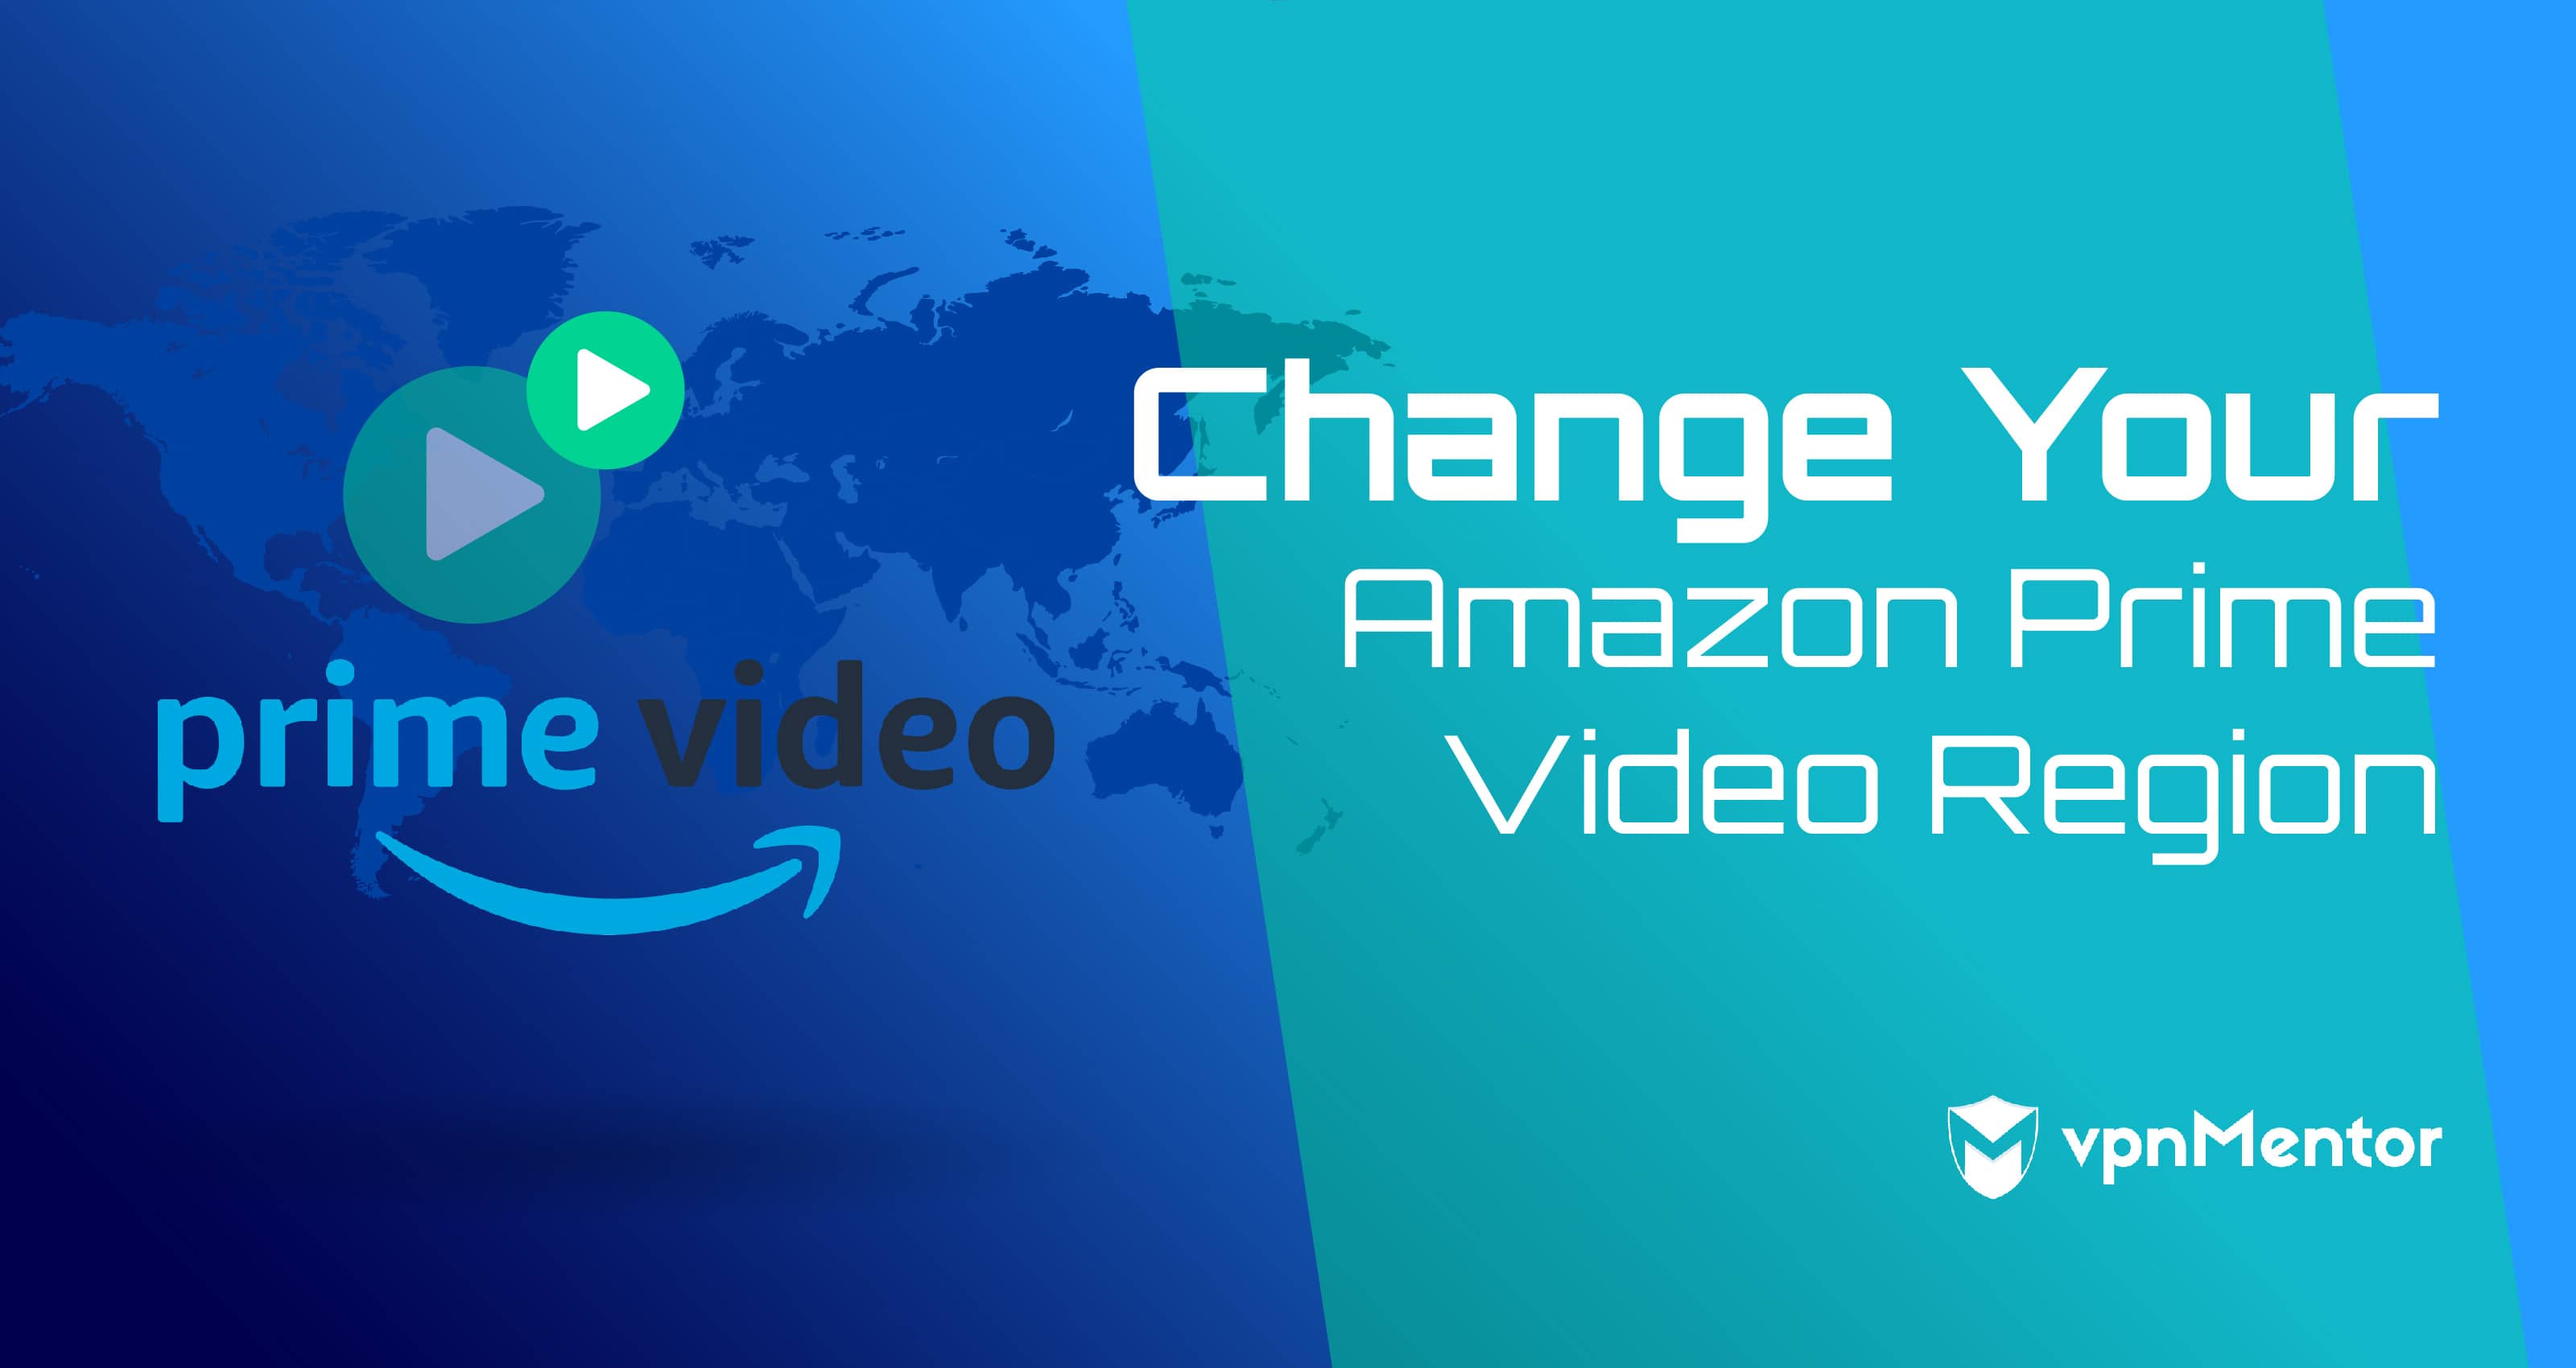 Wijzig de regio van Amazon Prime Video in 3 seconden (2022)